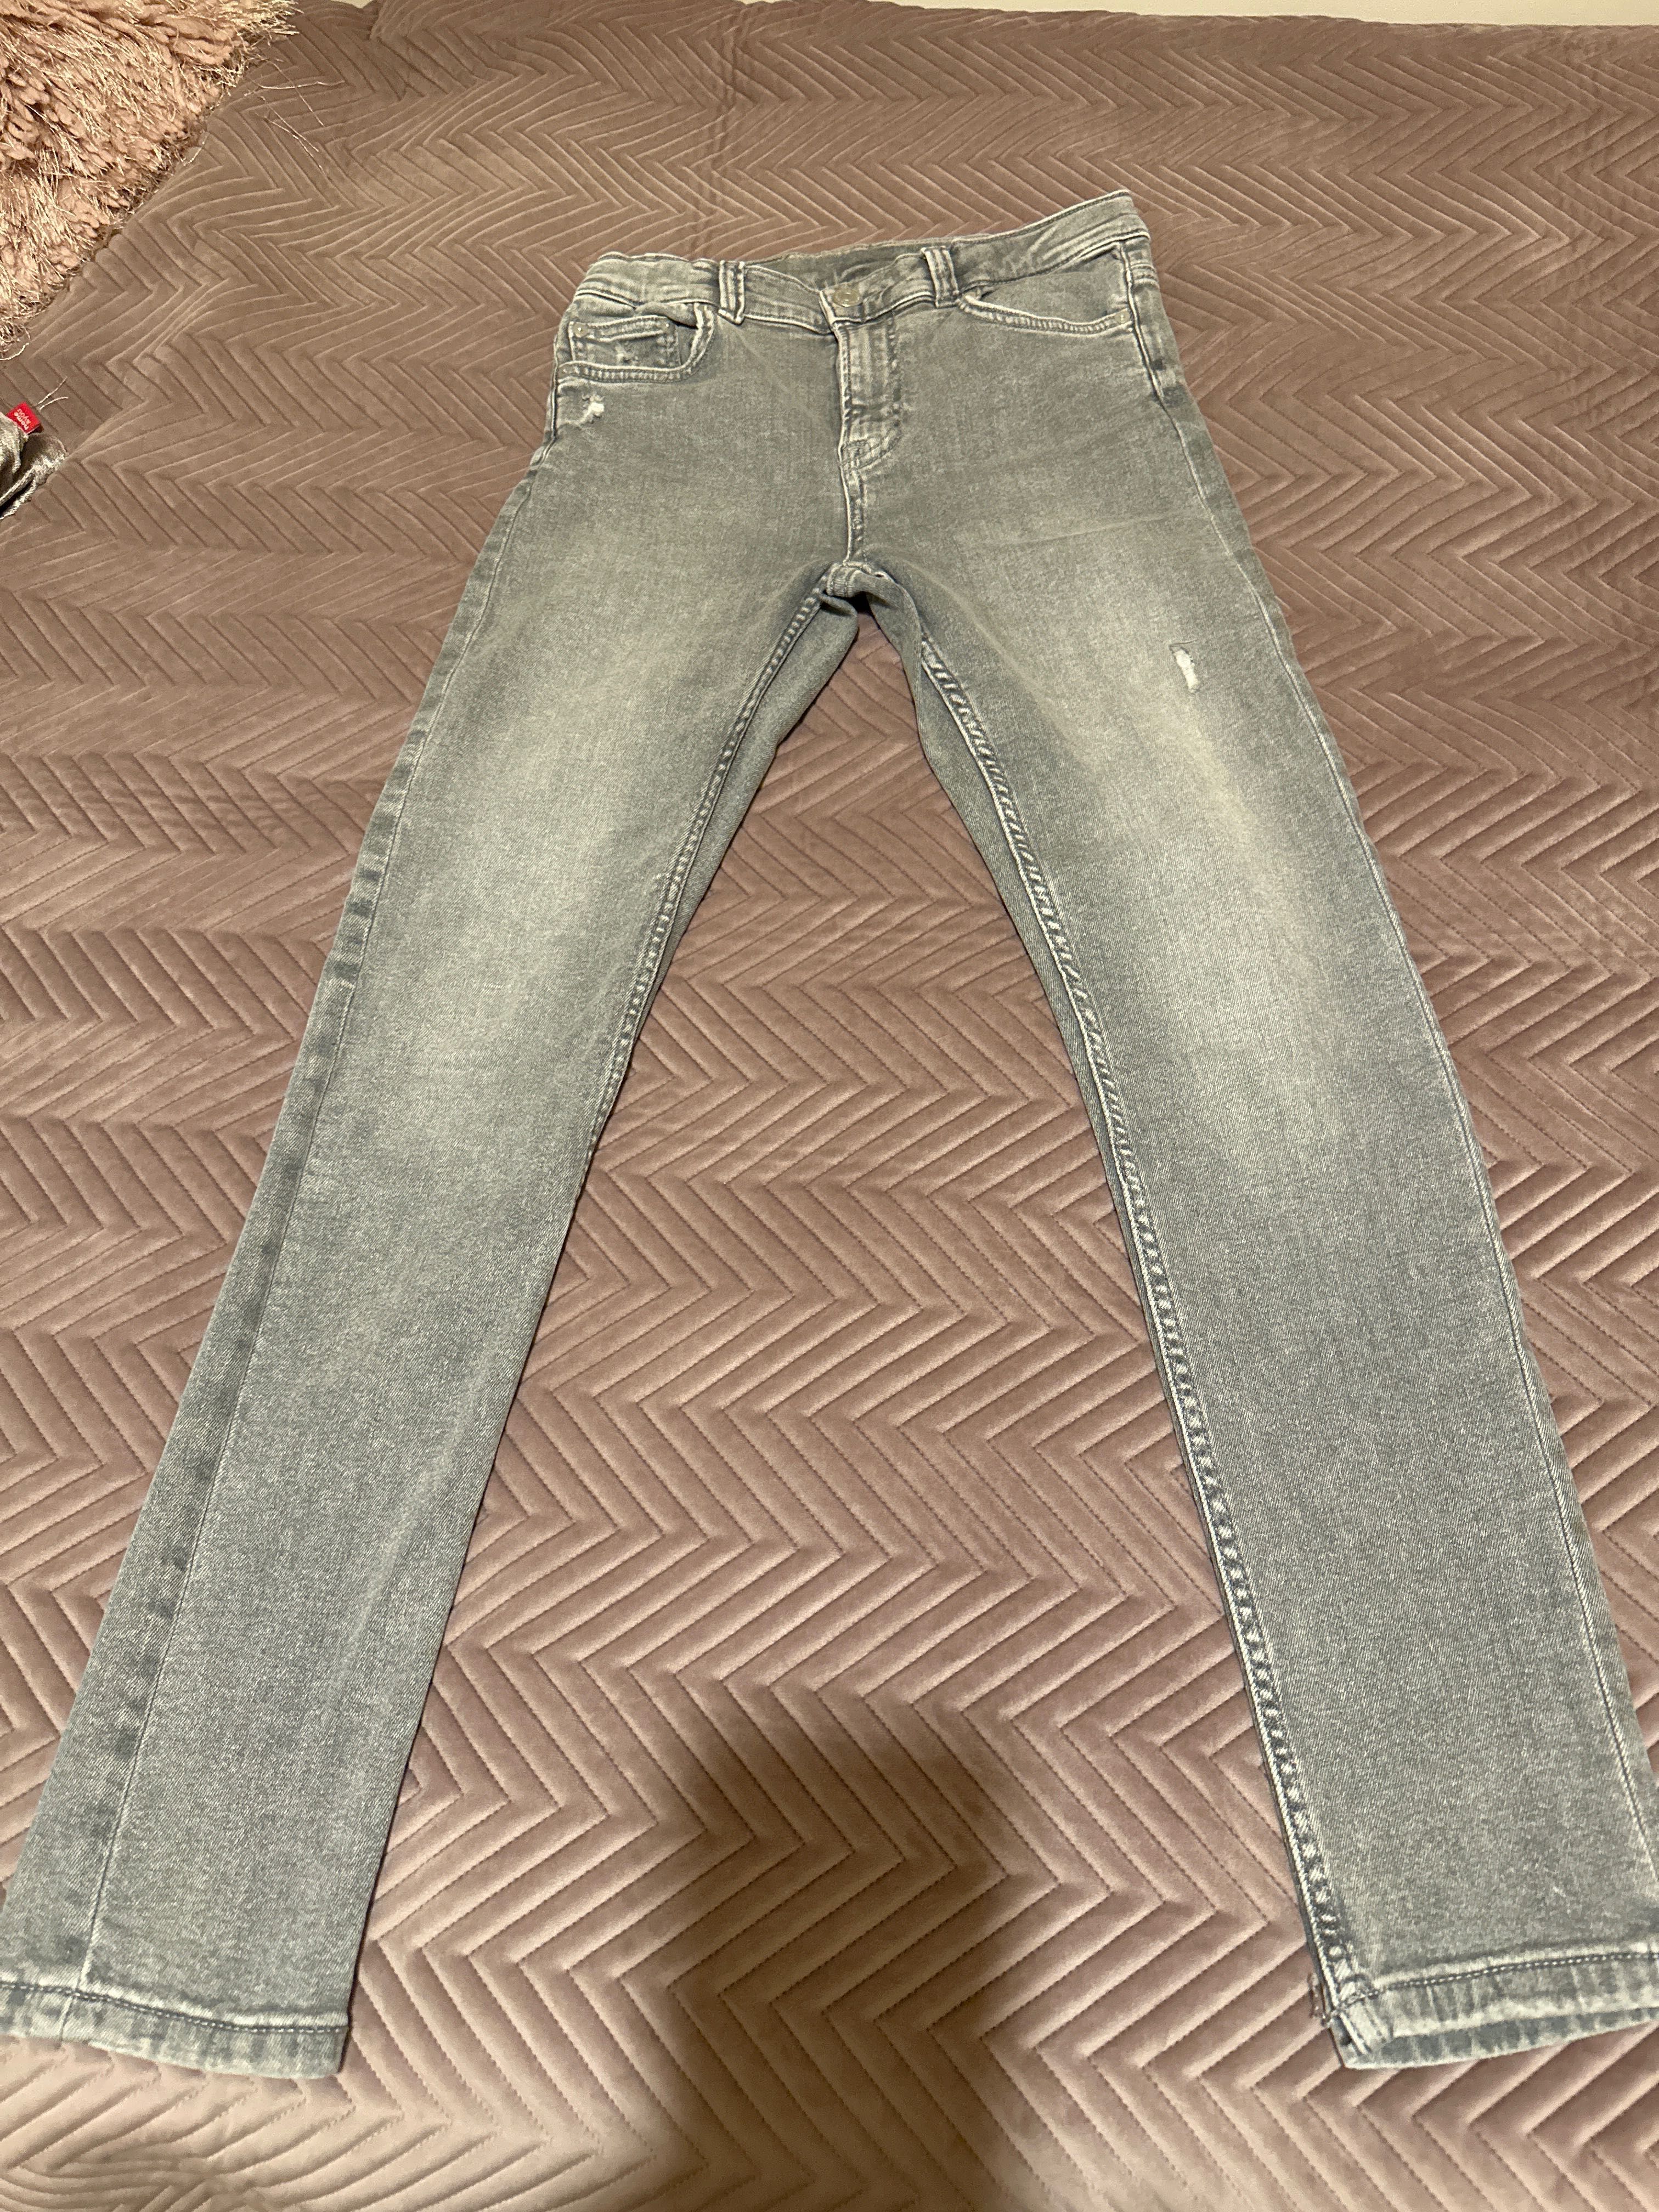 Jeansy chłopięce marki Zara, rozmiar 164 cm.